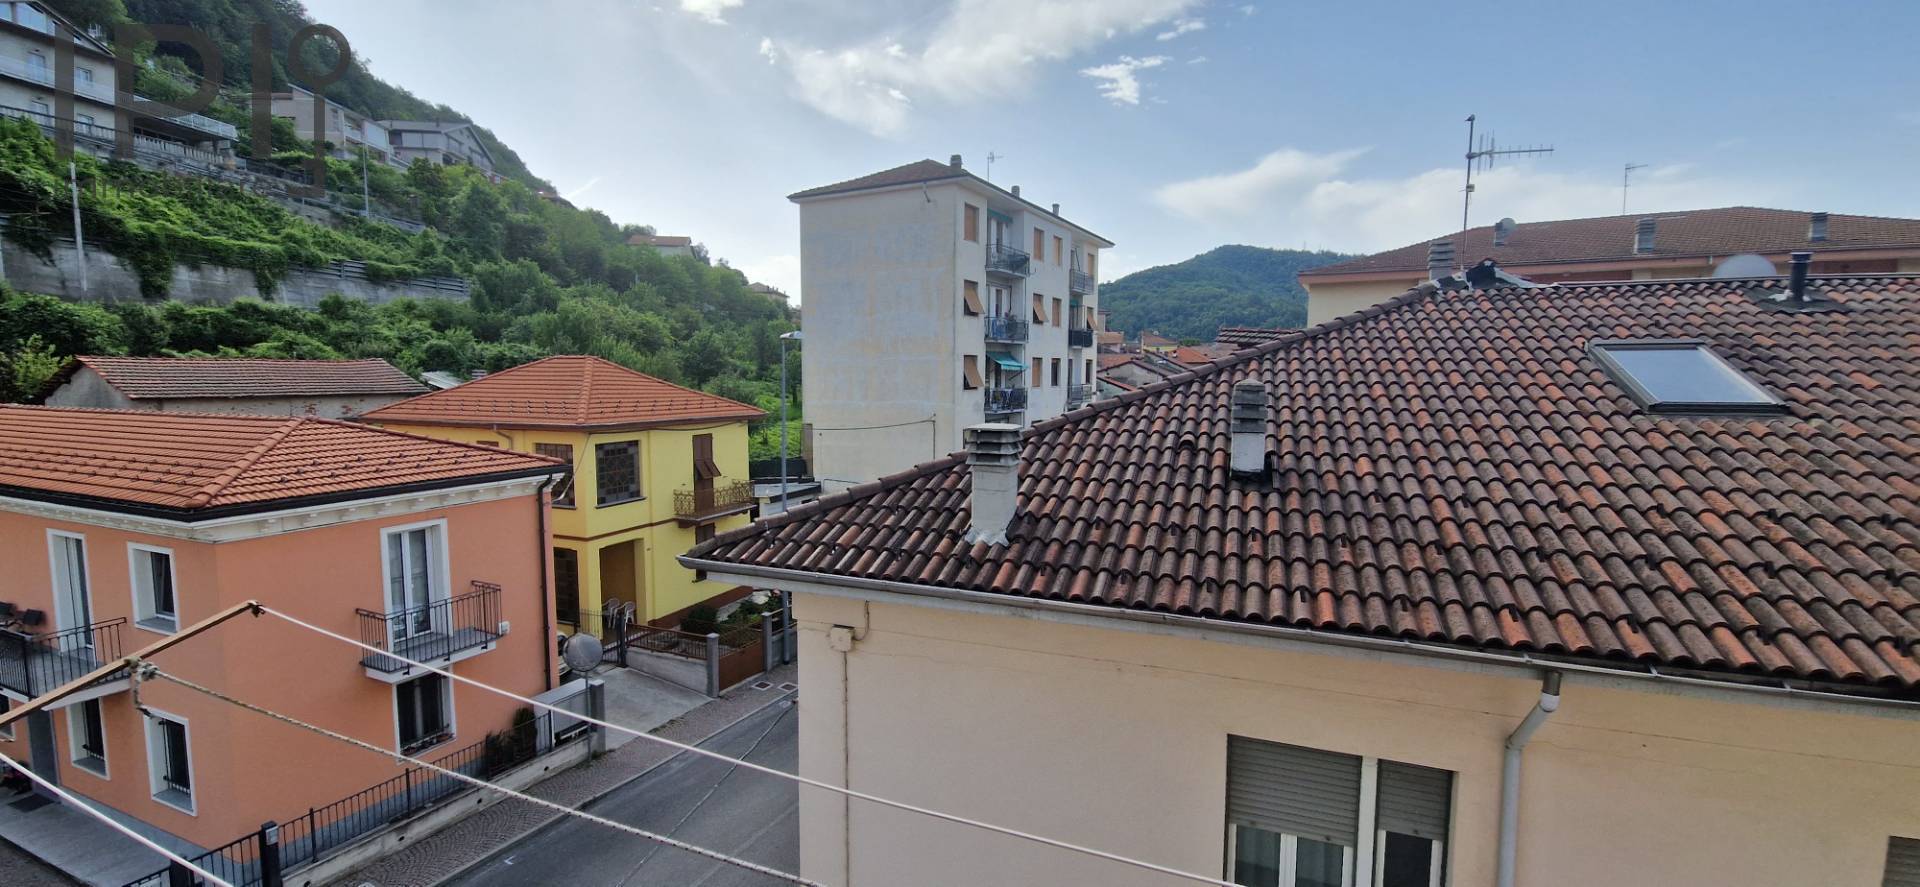 Appartamento in vendita a Cengio, 4 locali, zona ida, prezzo € 38.000 | PortaleAgenzieImmobiliari.it